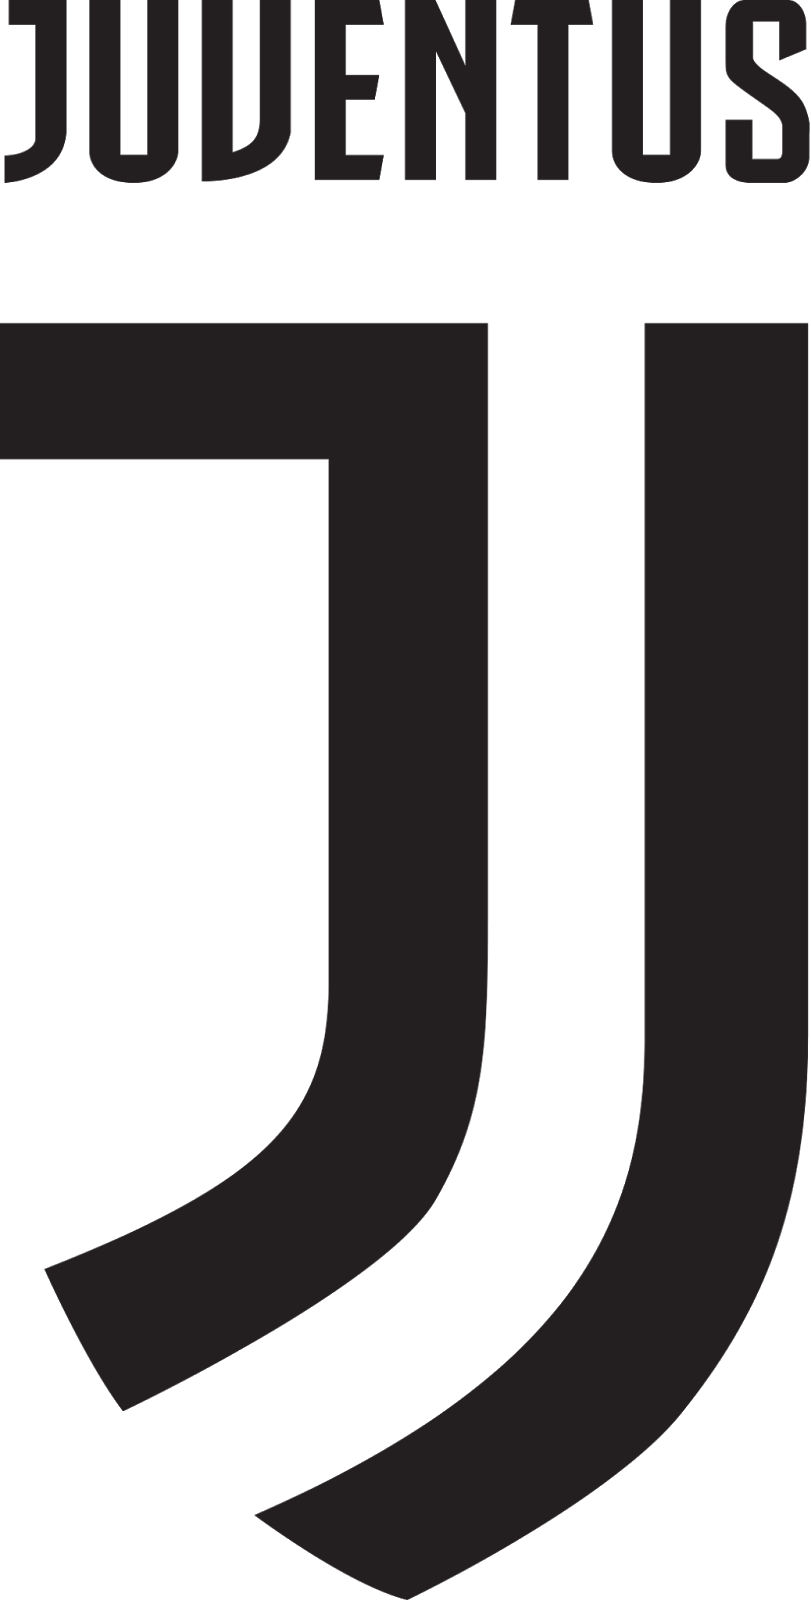  Logo  Juventus  237 Design 